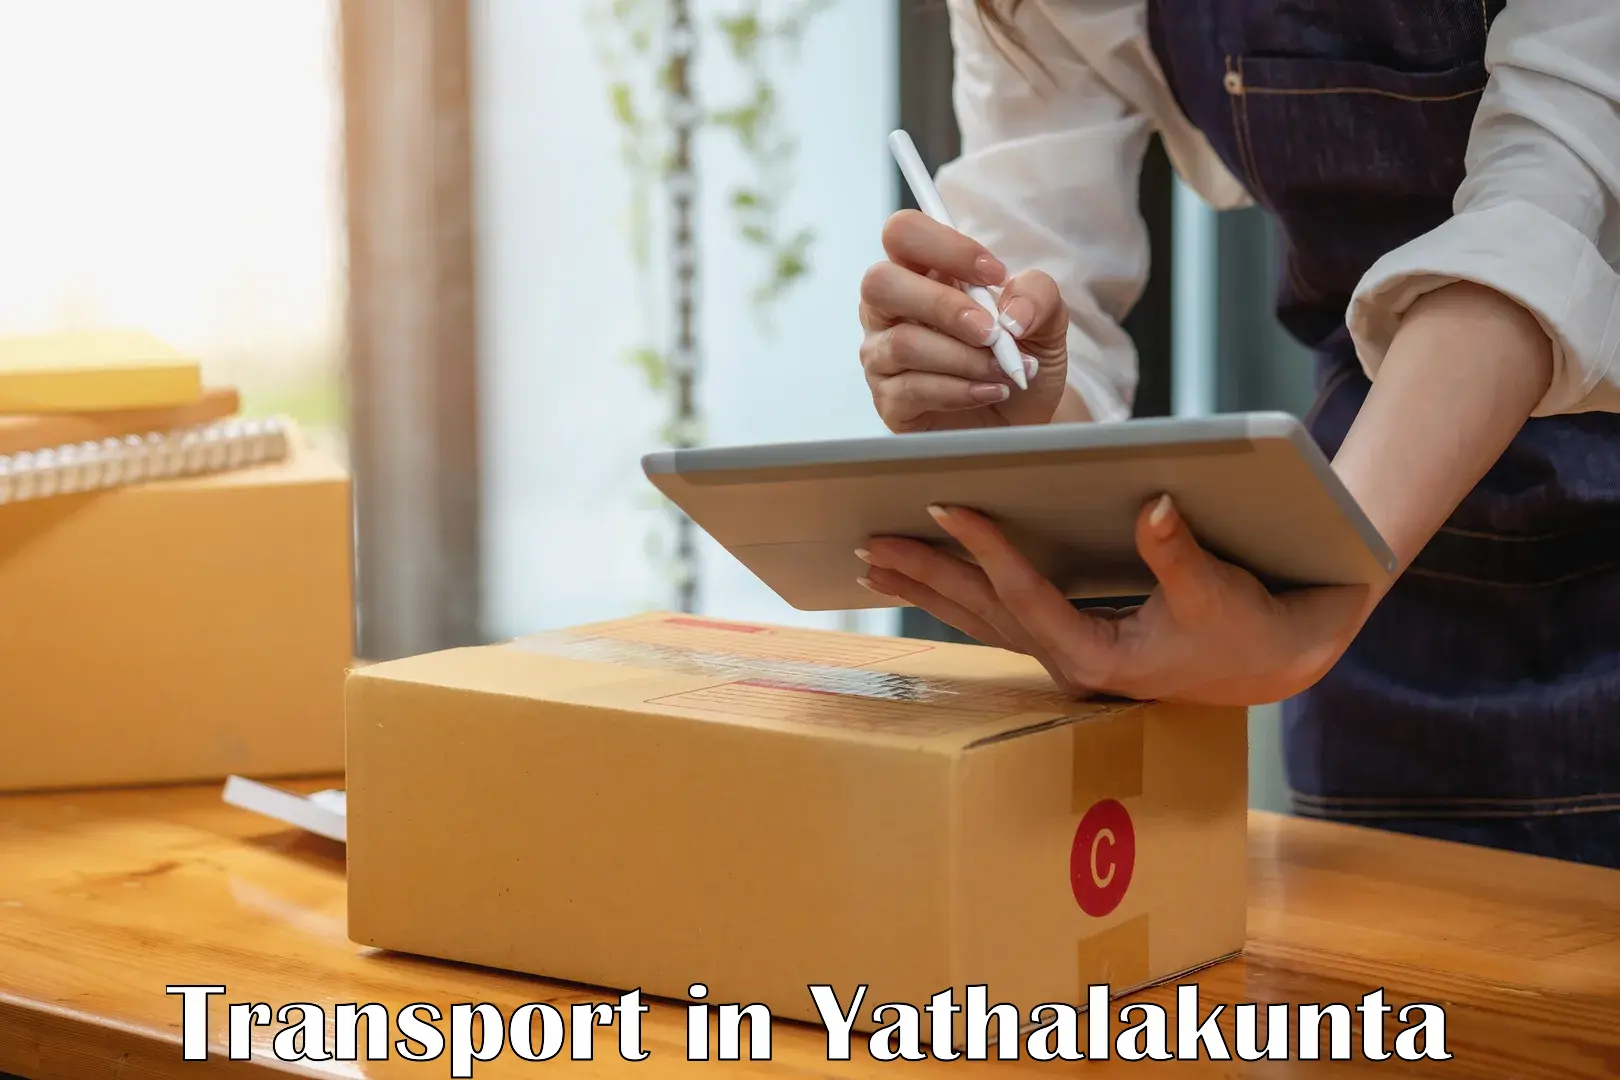 Furniture transport service in Yathalakunta